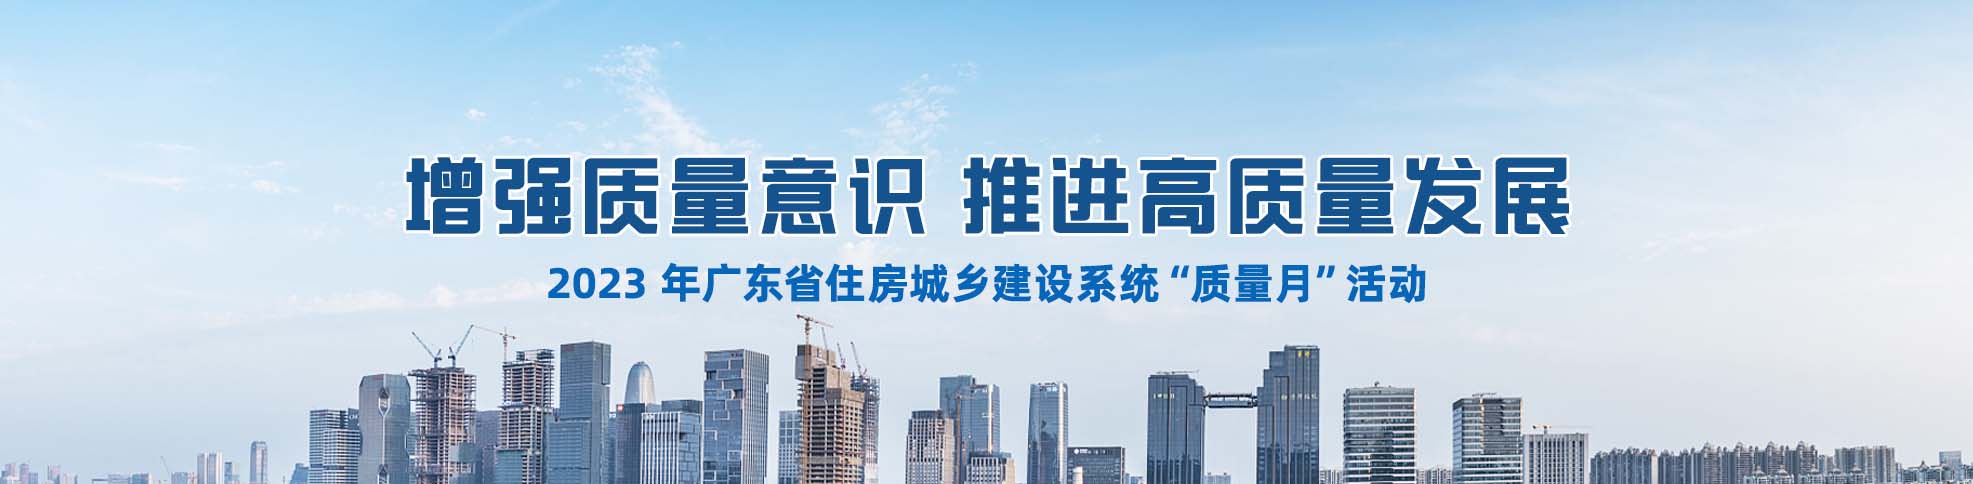 2023 年广东省住房城乡建设系统“质量月”活动